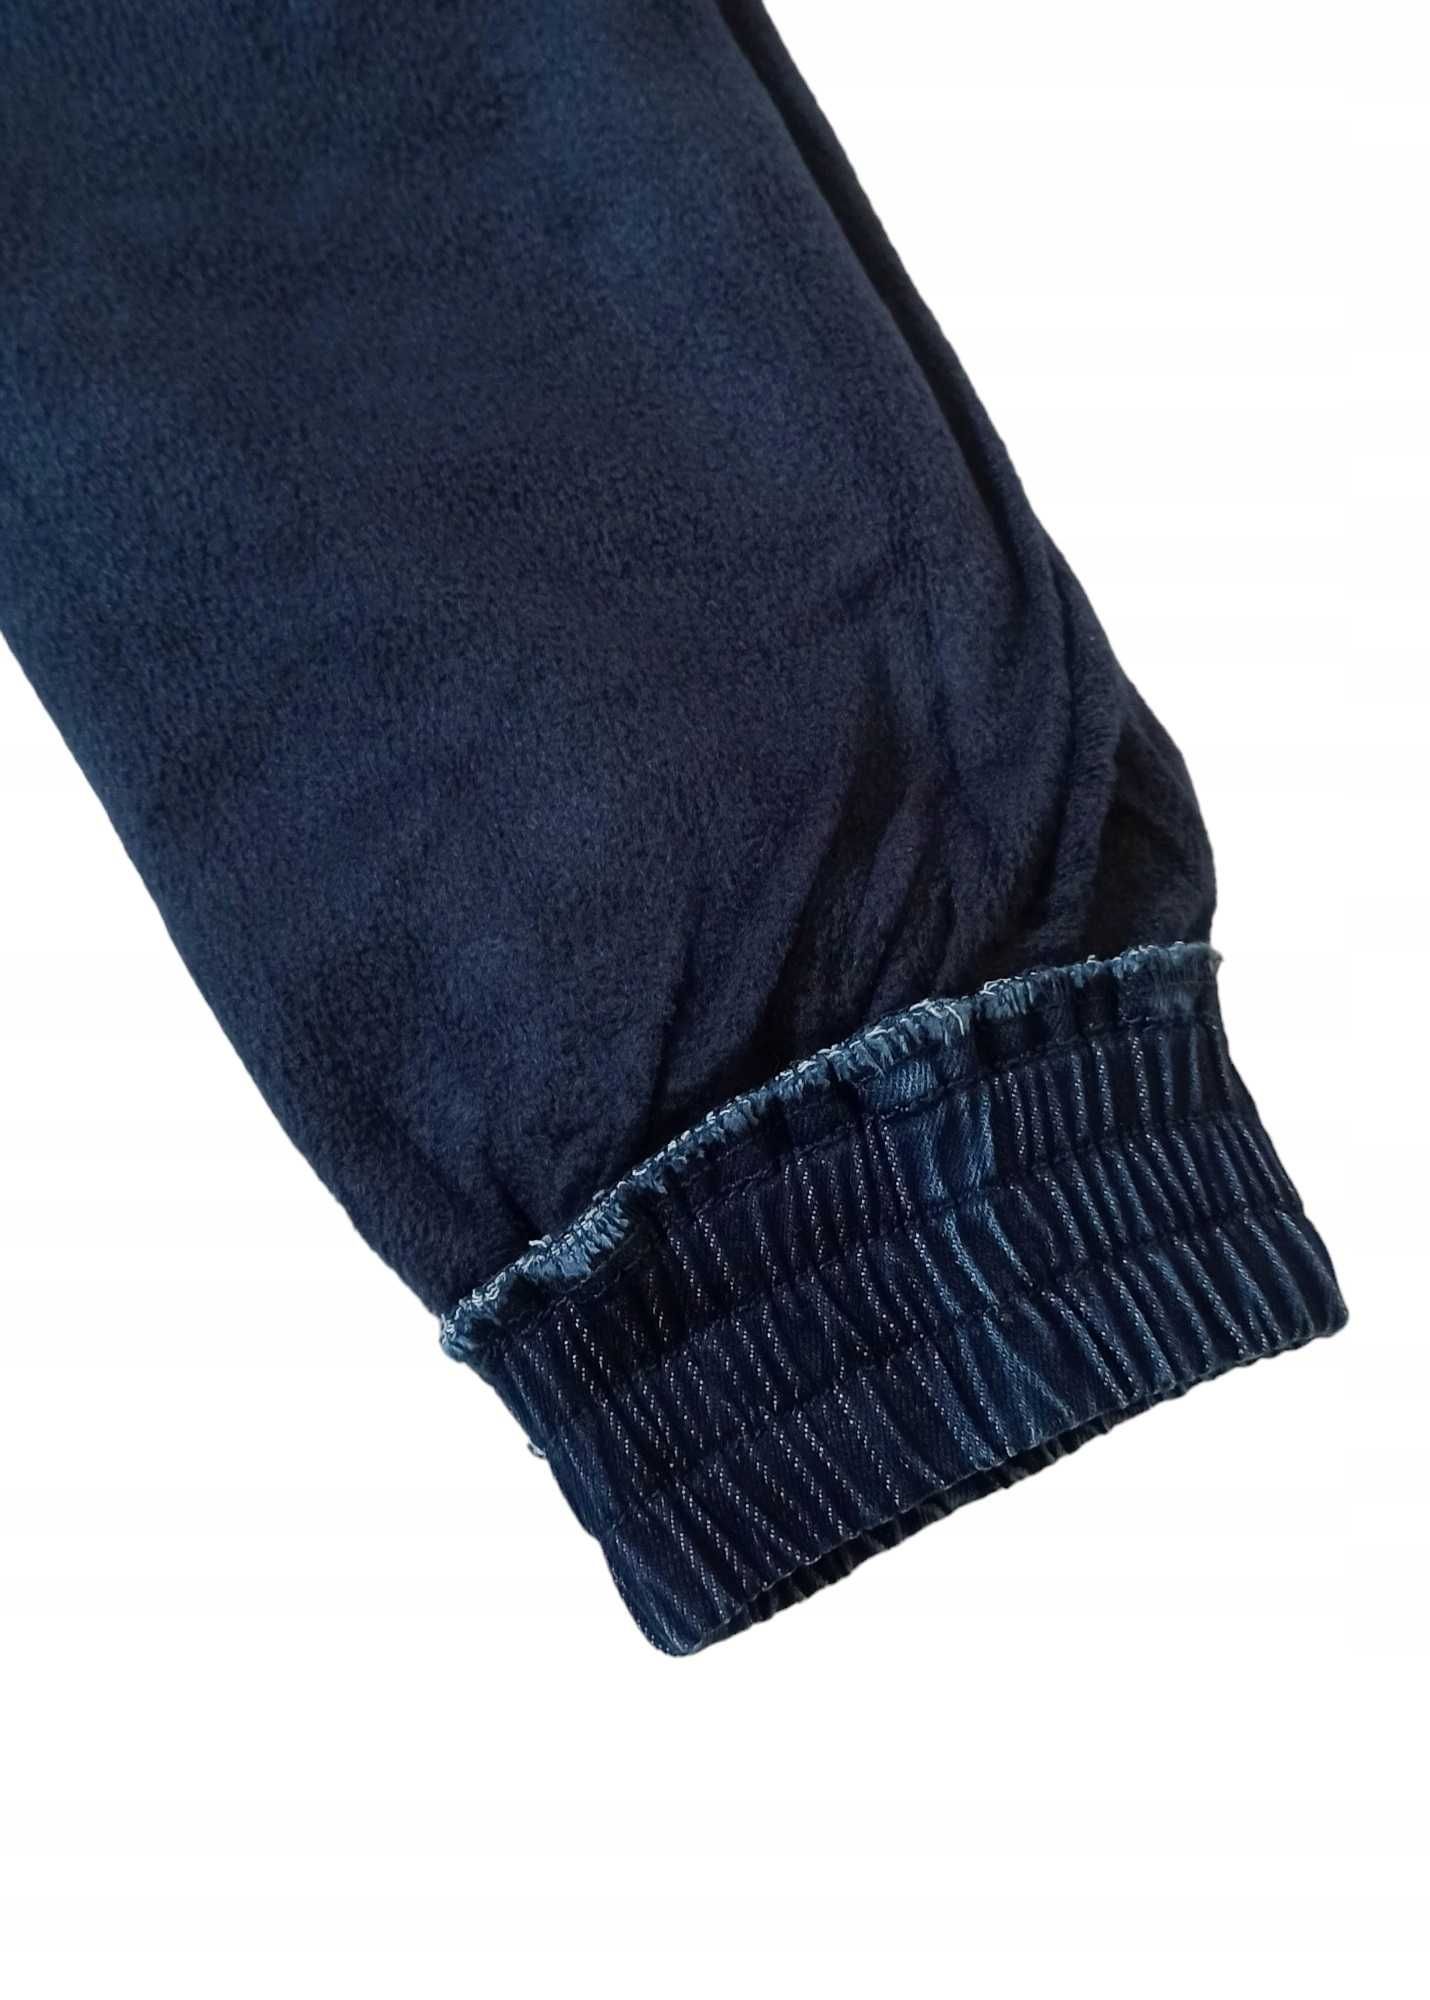 Spodnie Jeans miękkie elastyczne GUMA ocieplane polarem  nowy  170-176